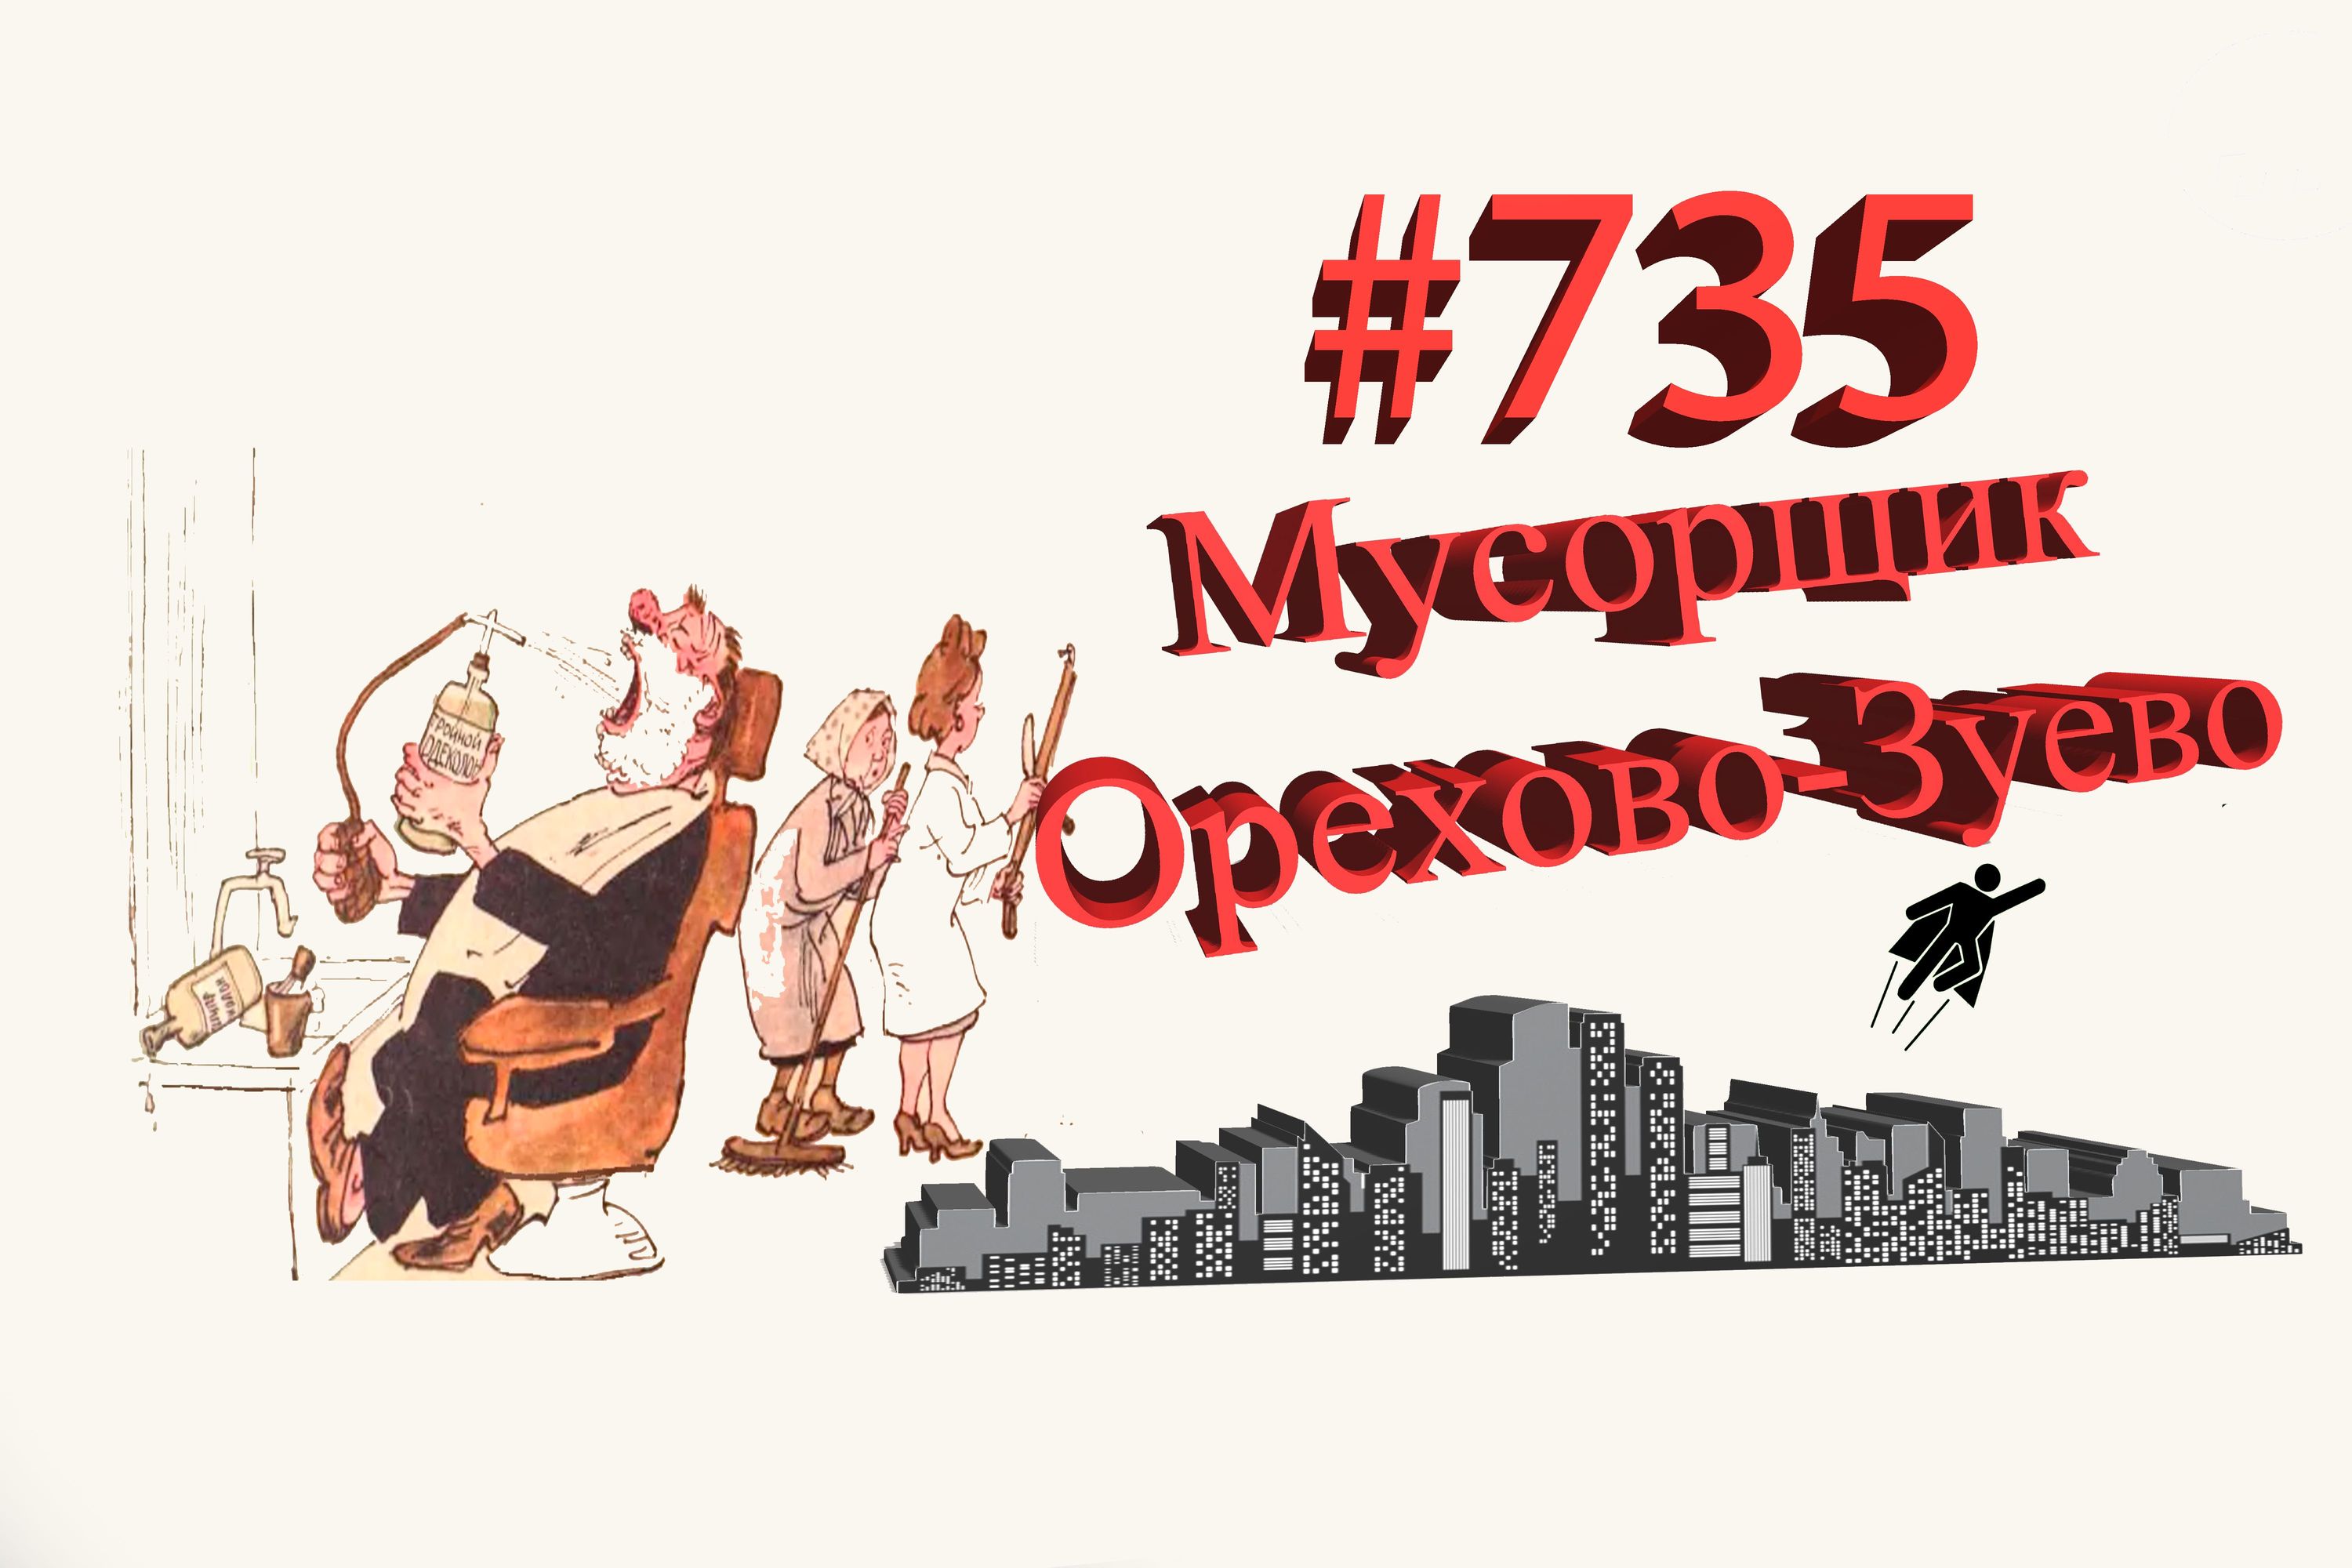 Орехово-Зуево сегодня #735 Подмосковье